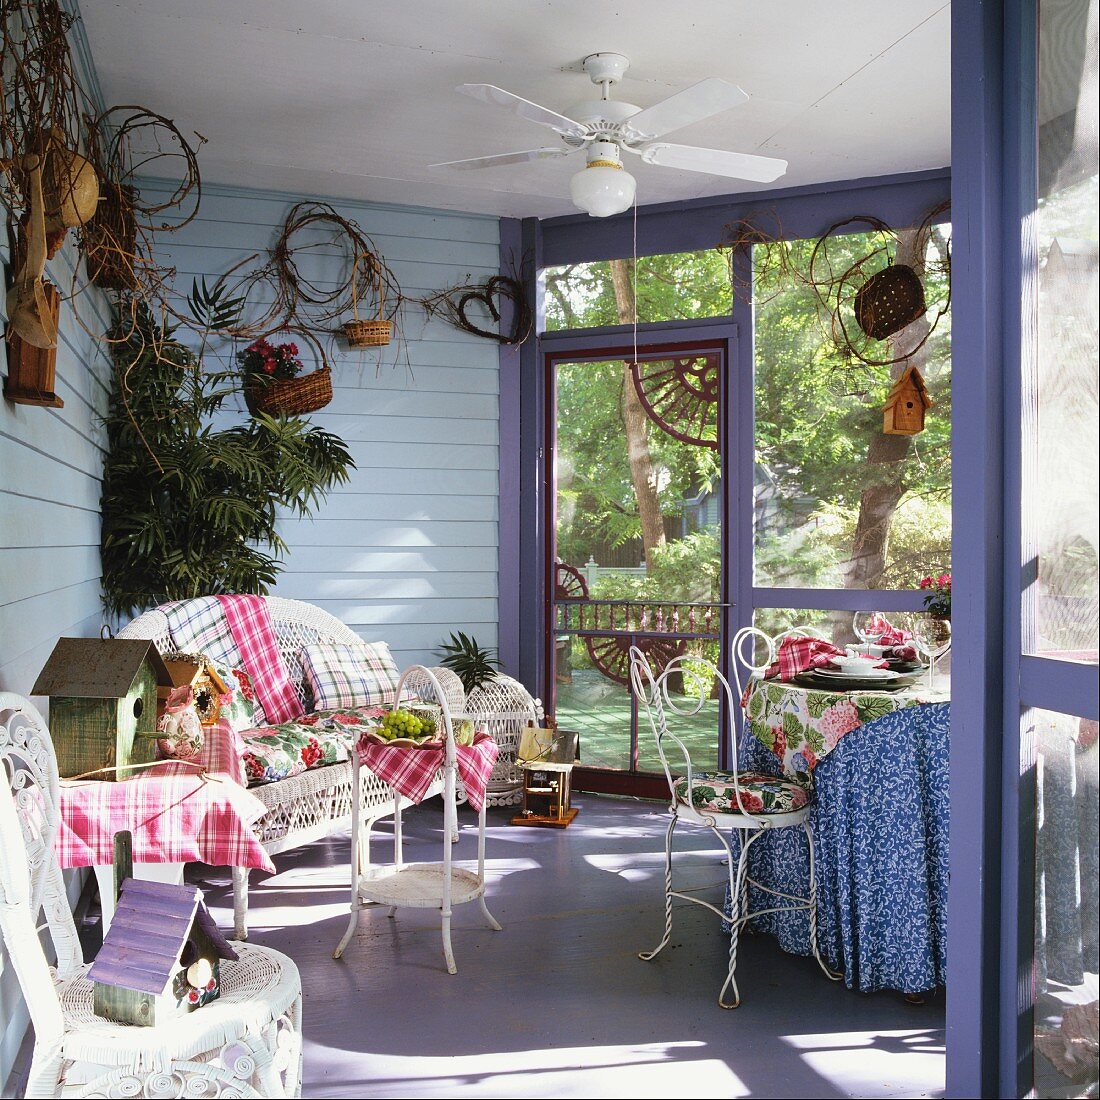 Verglaste Veranda mit Korbmöbeln und einem Deckenventilator; gemusterte Textilien sorgen für ein heiteres Ambiente